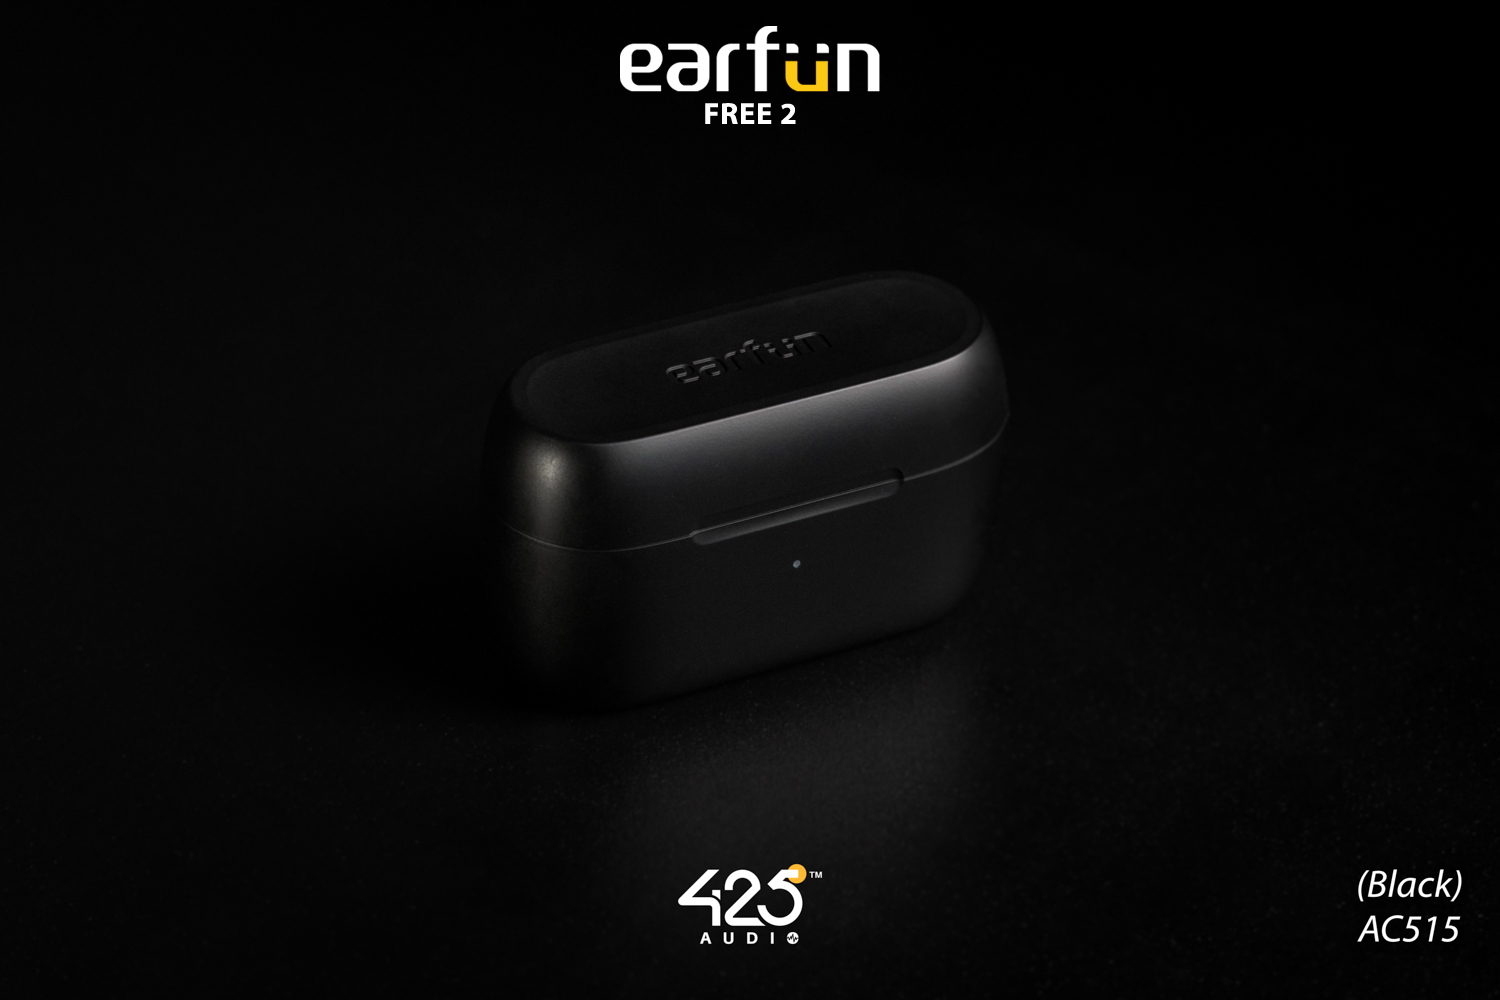 Earfun Free 2,true wireless,earbuds,หูฟังไร้สาย,หูฟังบลูทูธ,earfun free 2,free 2,earfun